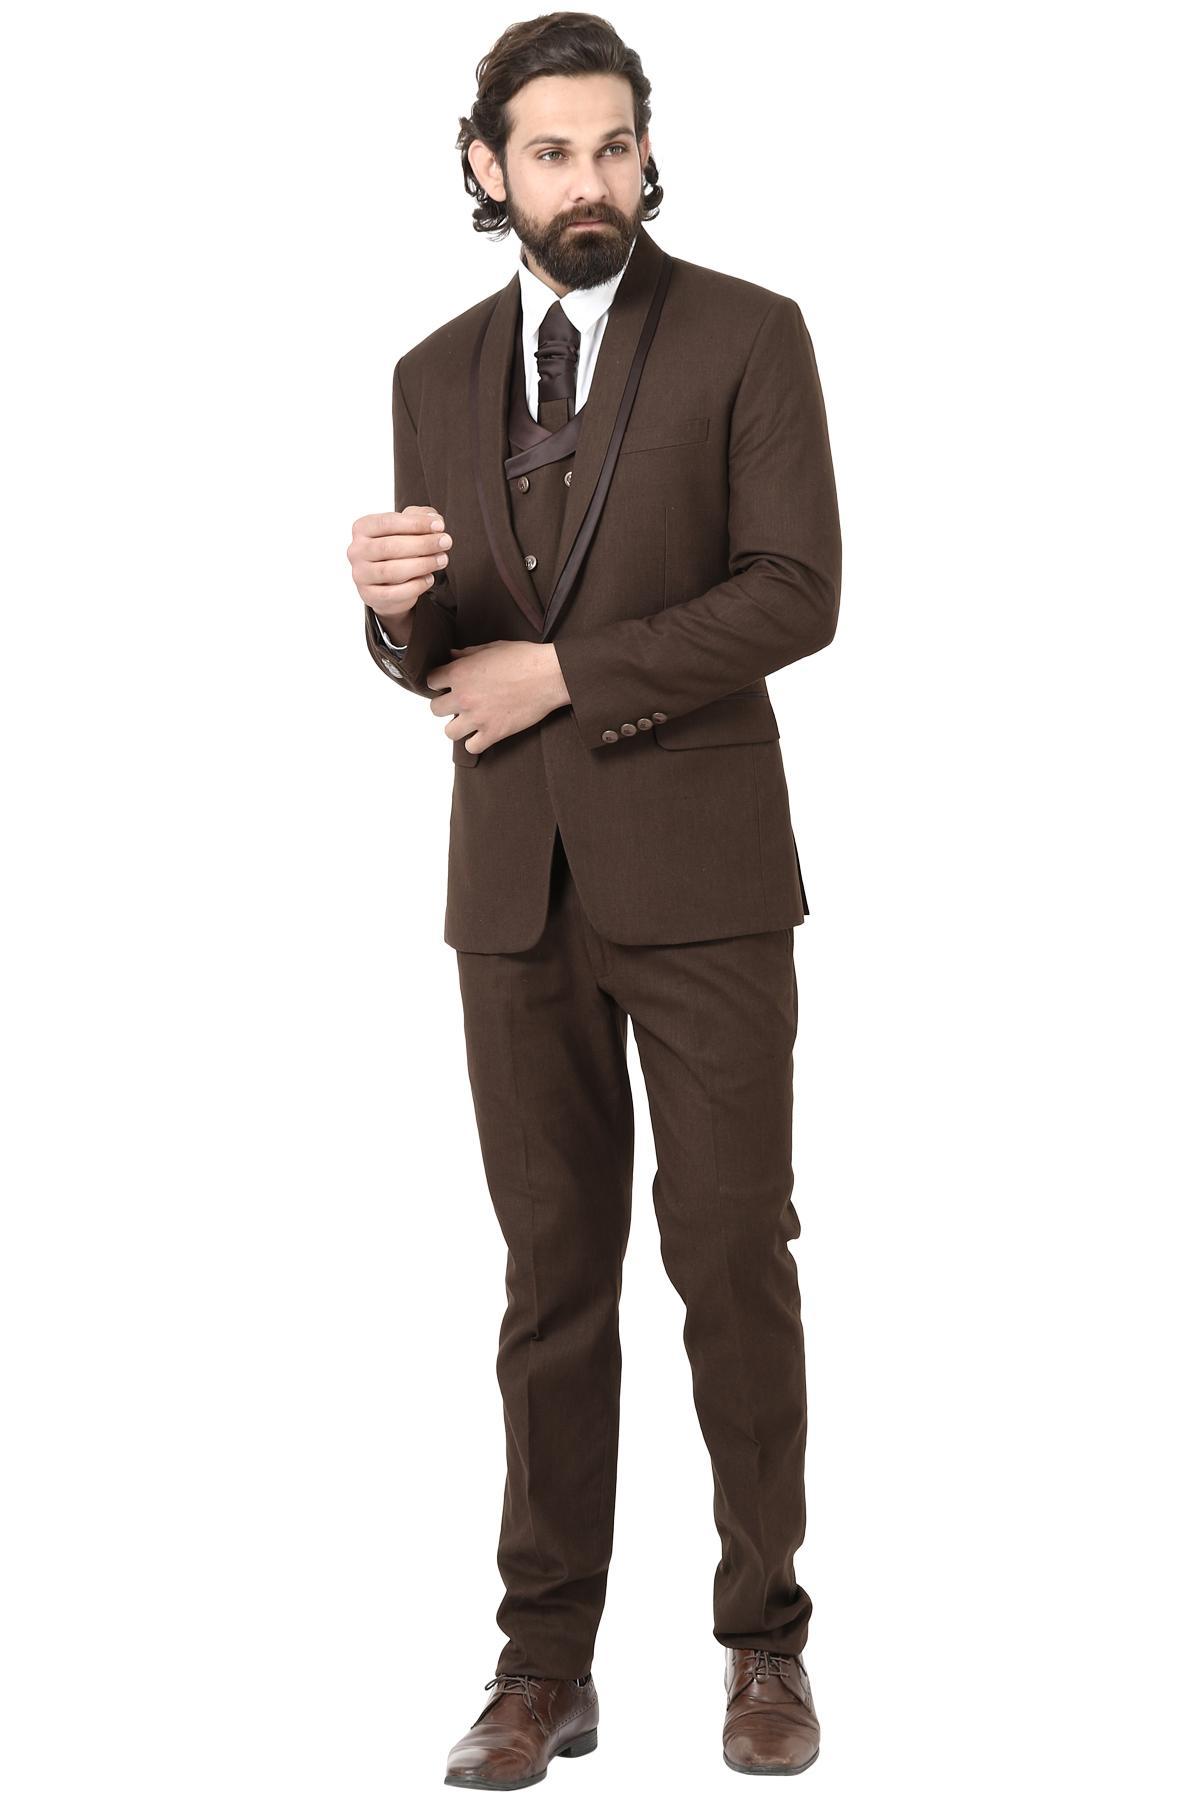 Buy Van Heusen Brown Three Piece Suit Online  791533  Van Heusen